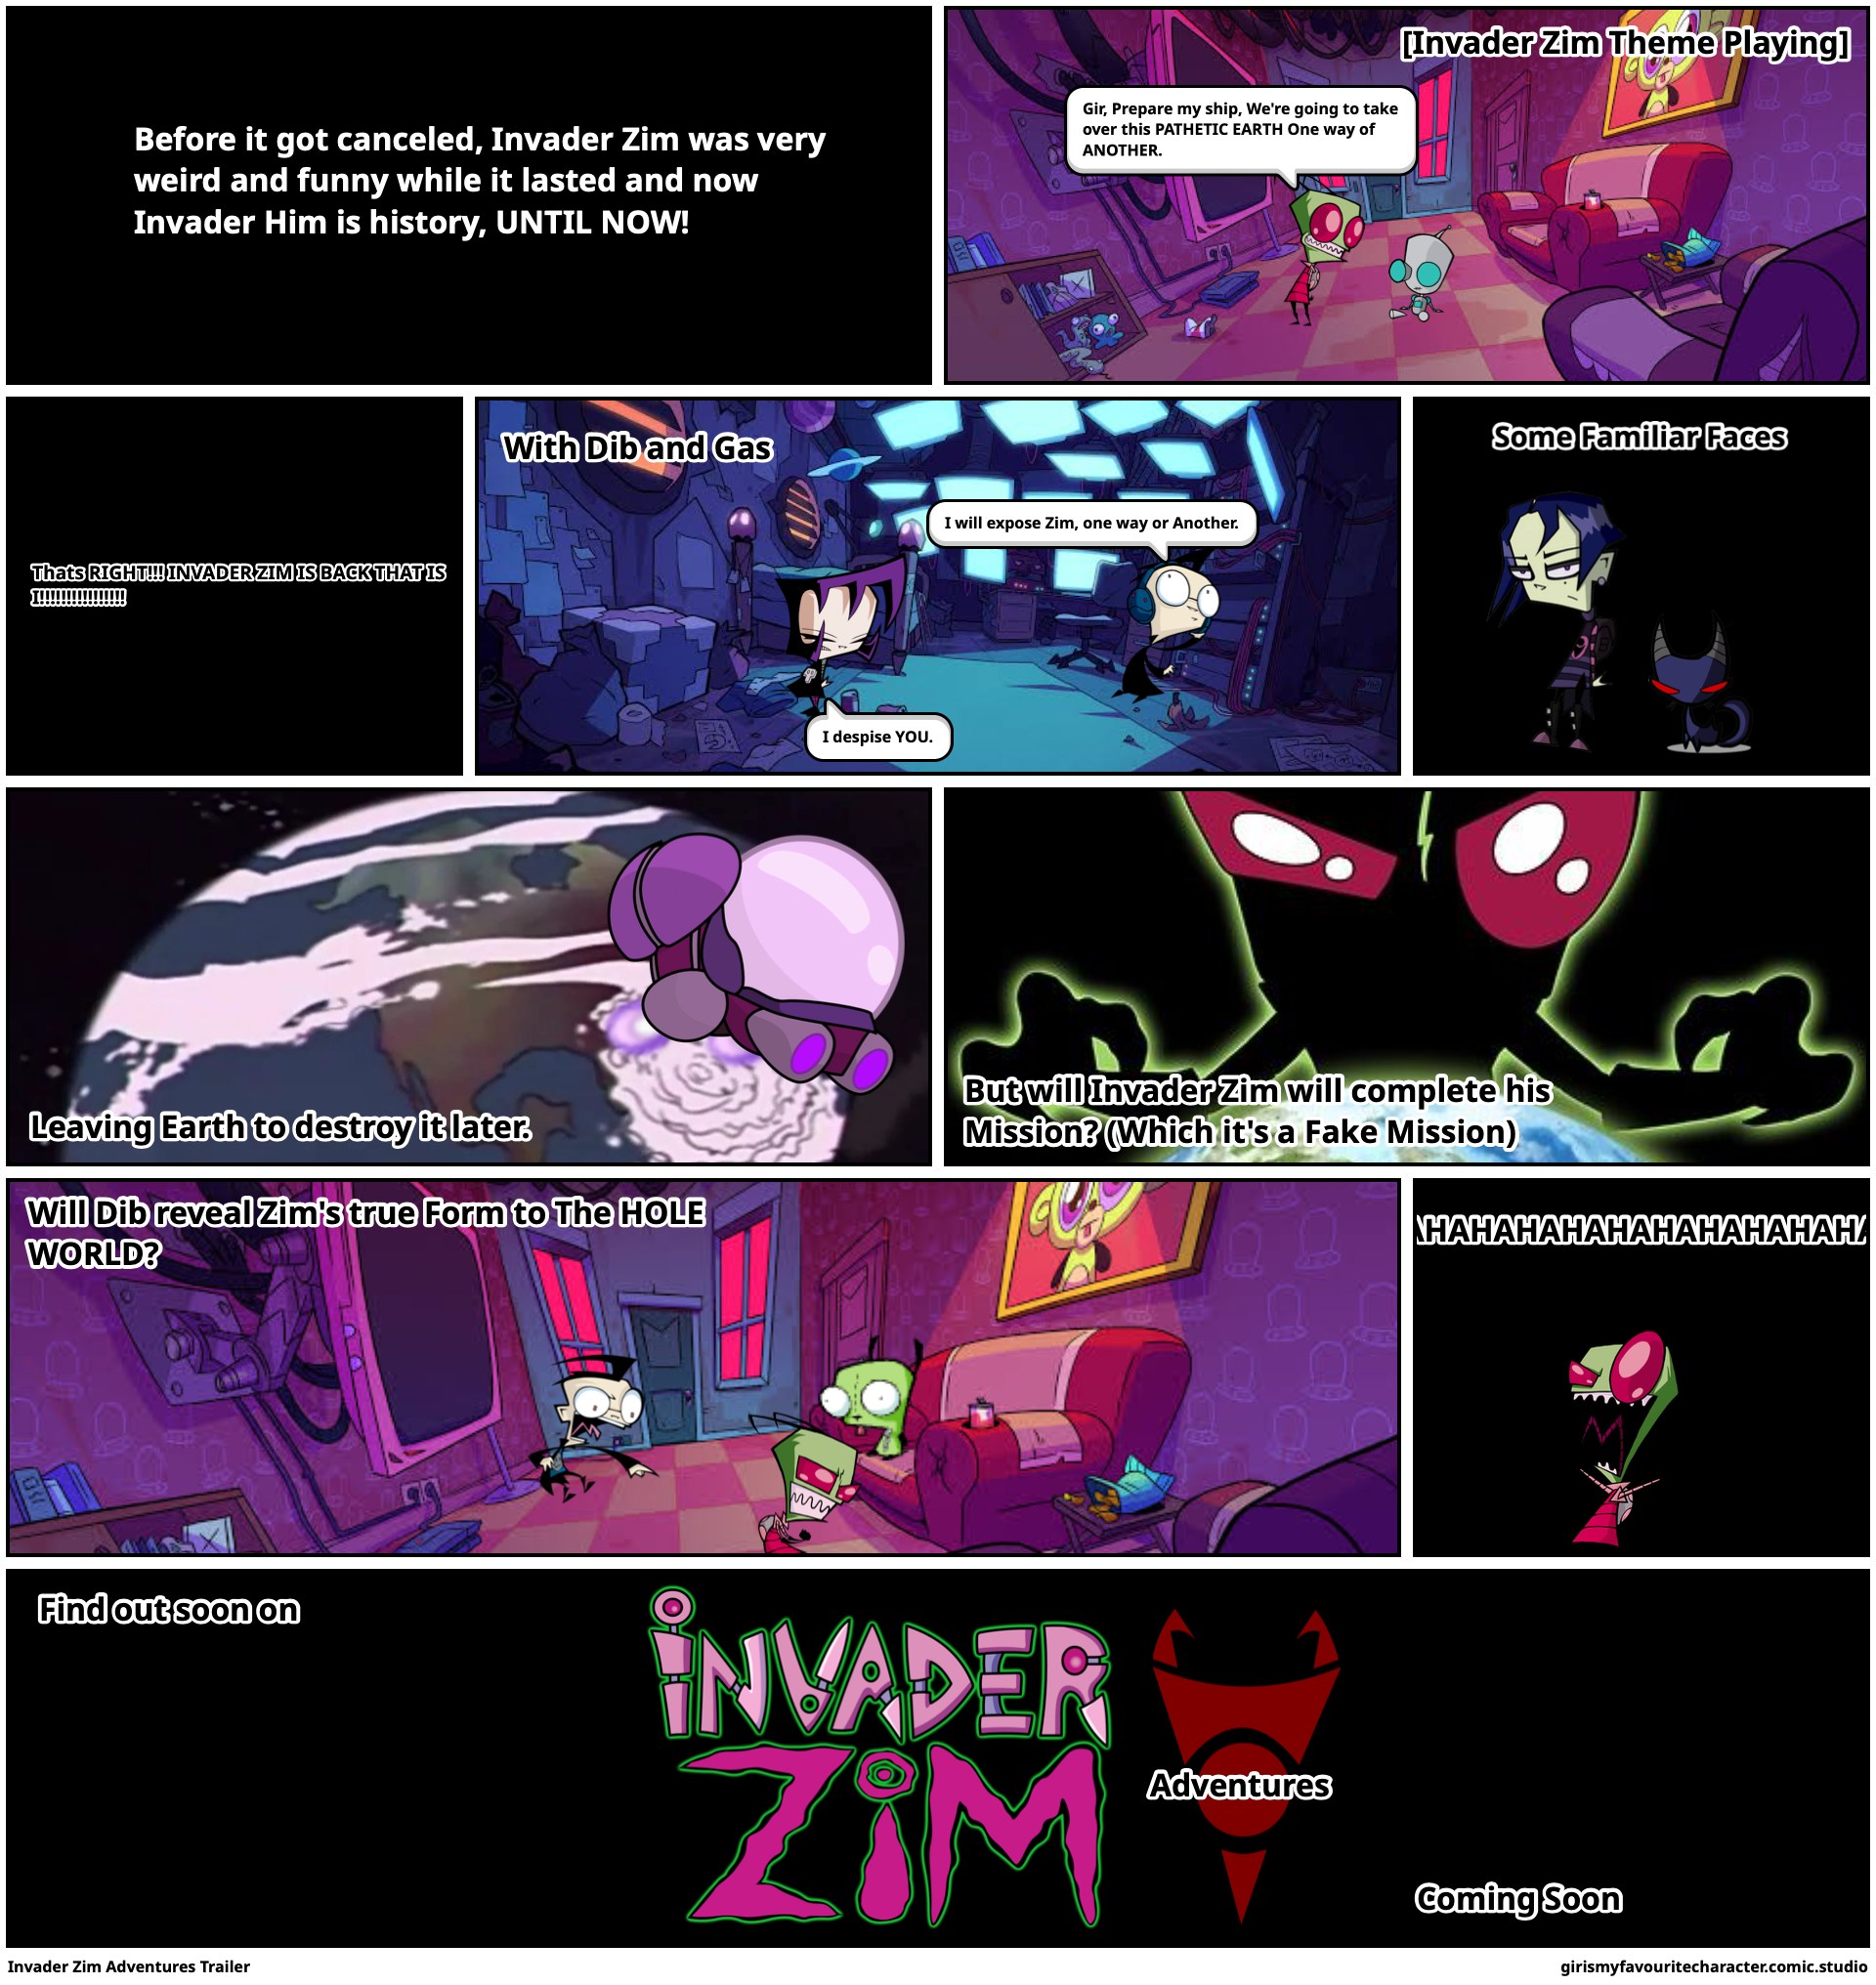 Invader Zim Adventures Trailer 